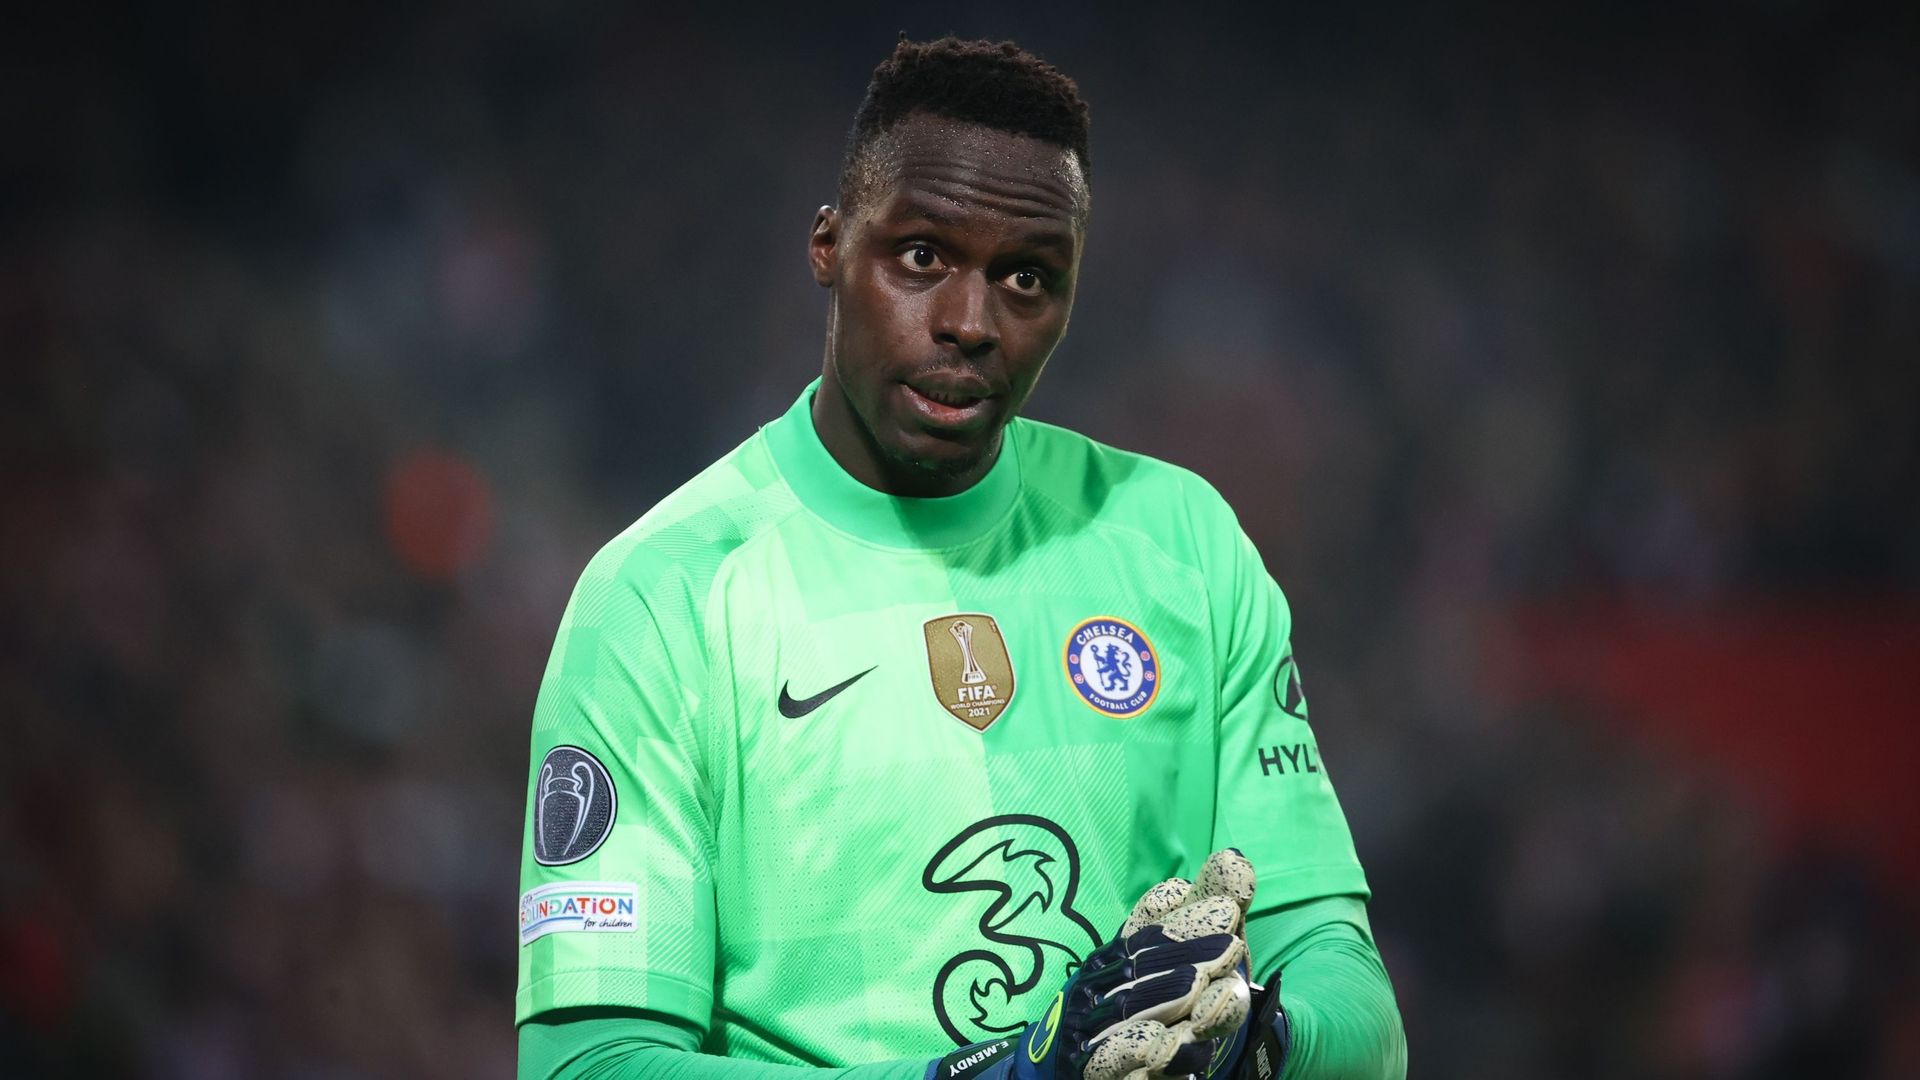 Lire la suite à propos de l’article Le gardien sénégalais a été informé qu’il pouvait quitter Chelsea cet été.   